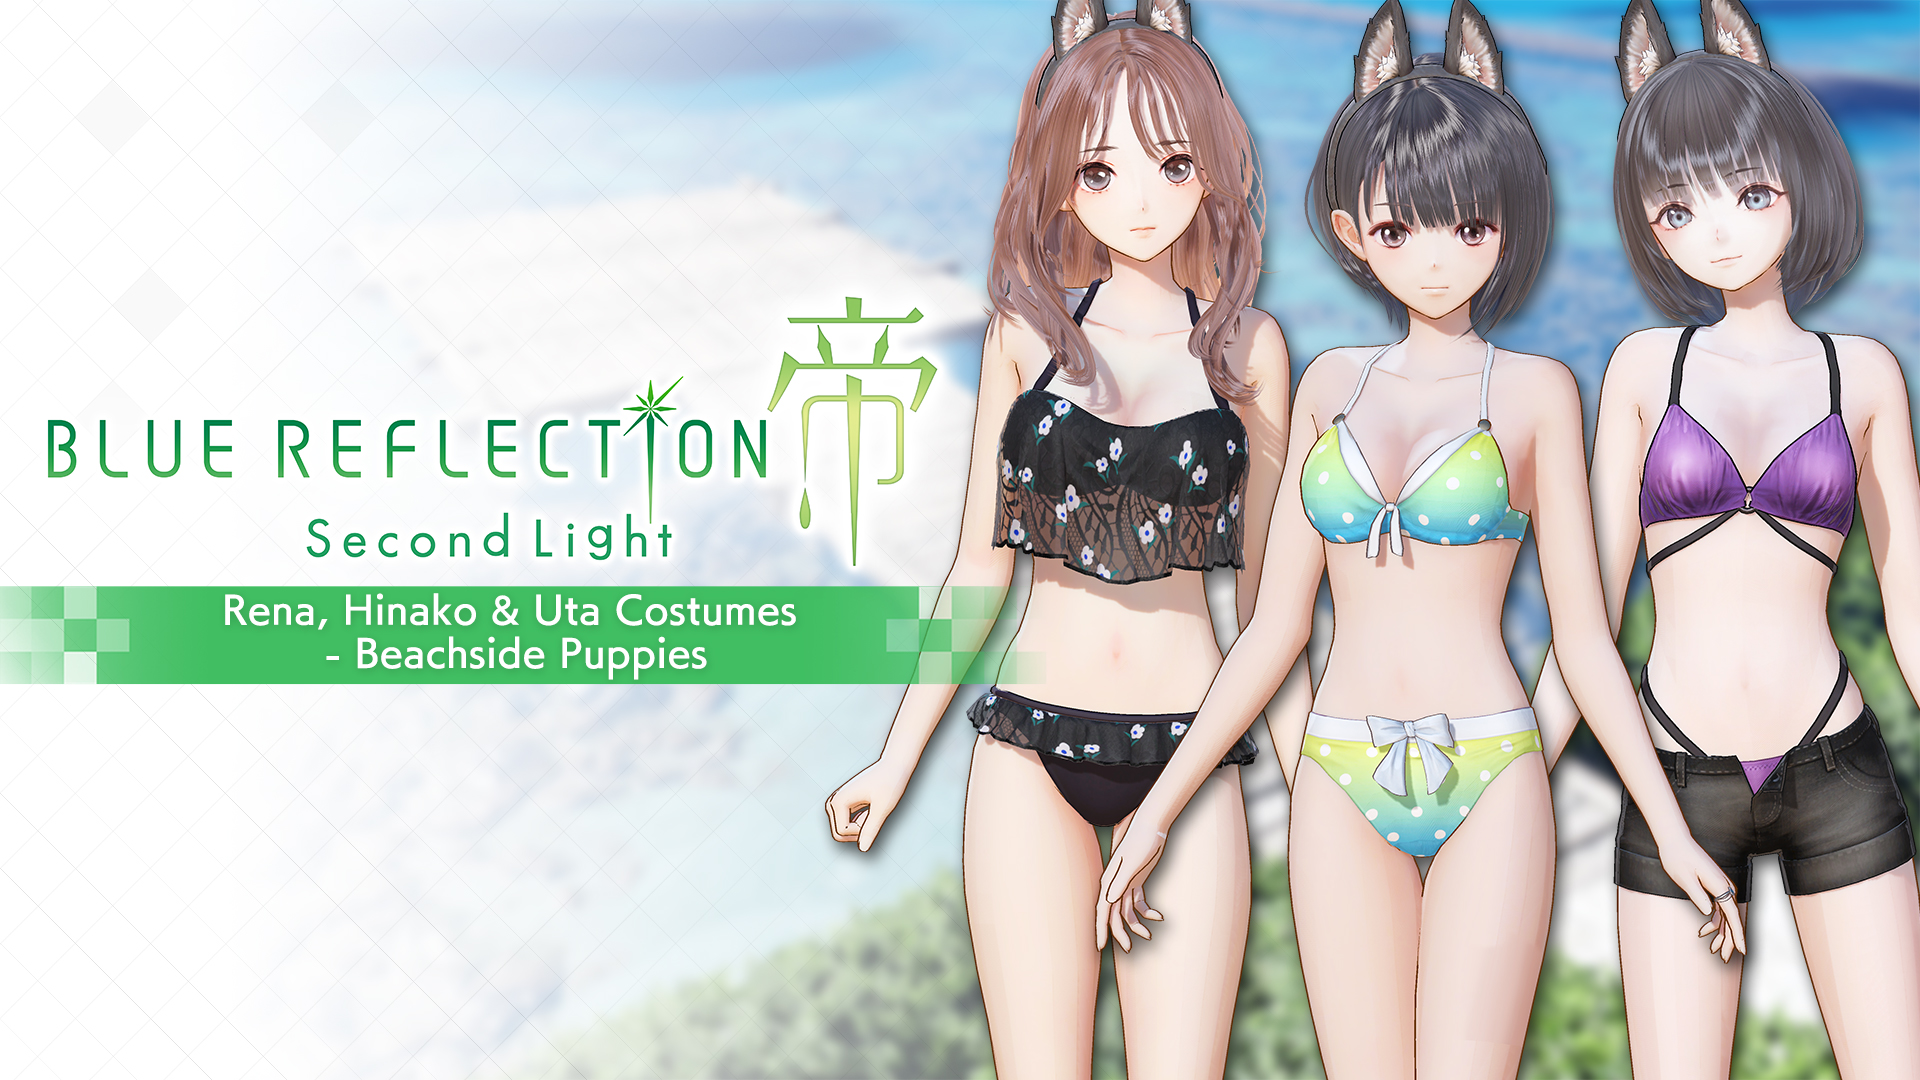 Rena, Hinako & Uta Costumes - Beachside Puppies